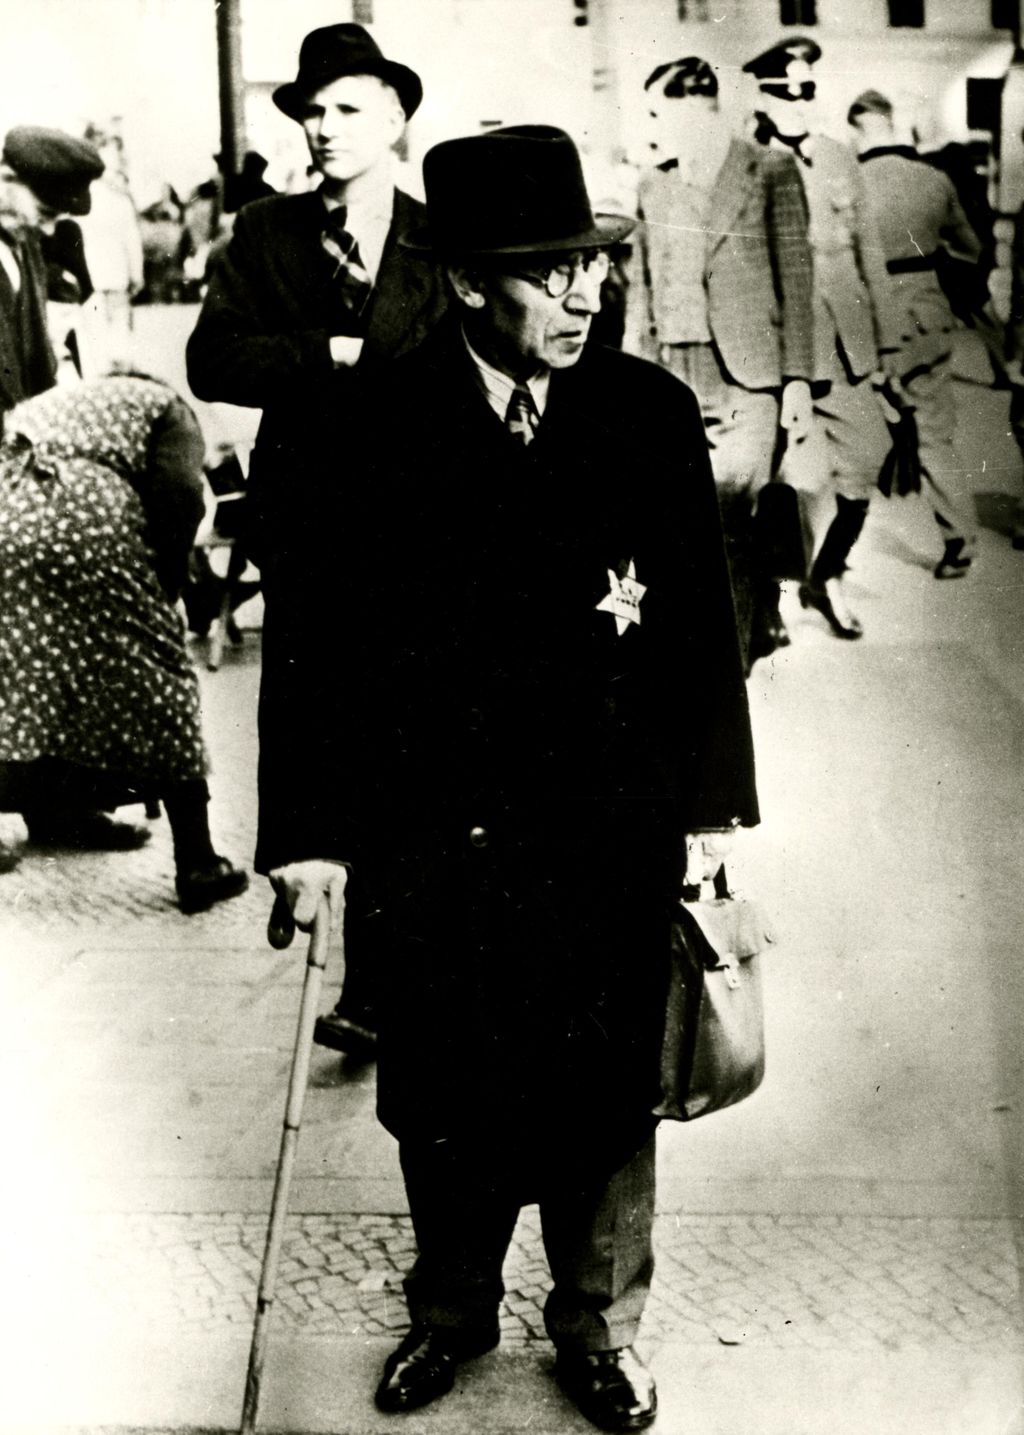 Foto: Mann mit dem "Judenstern" am Mantel, 1941